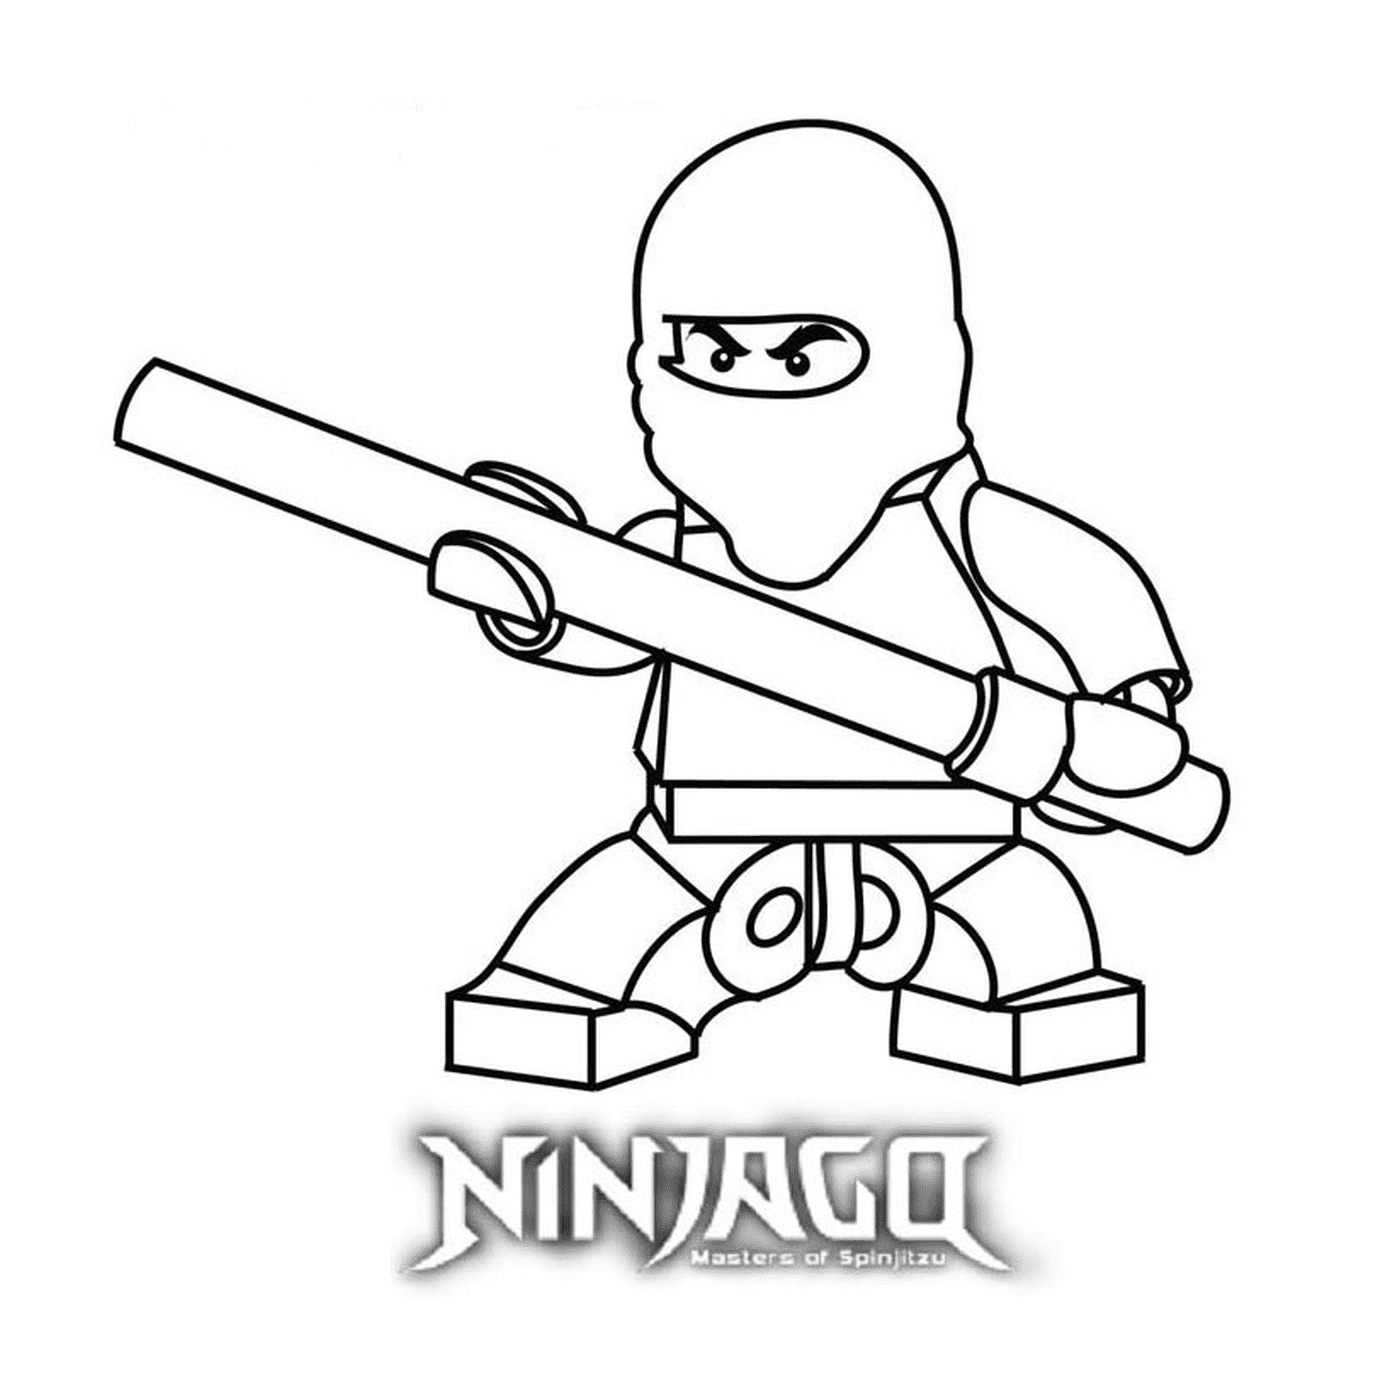  Загрузка и печать Lego Ninjago 